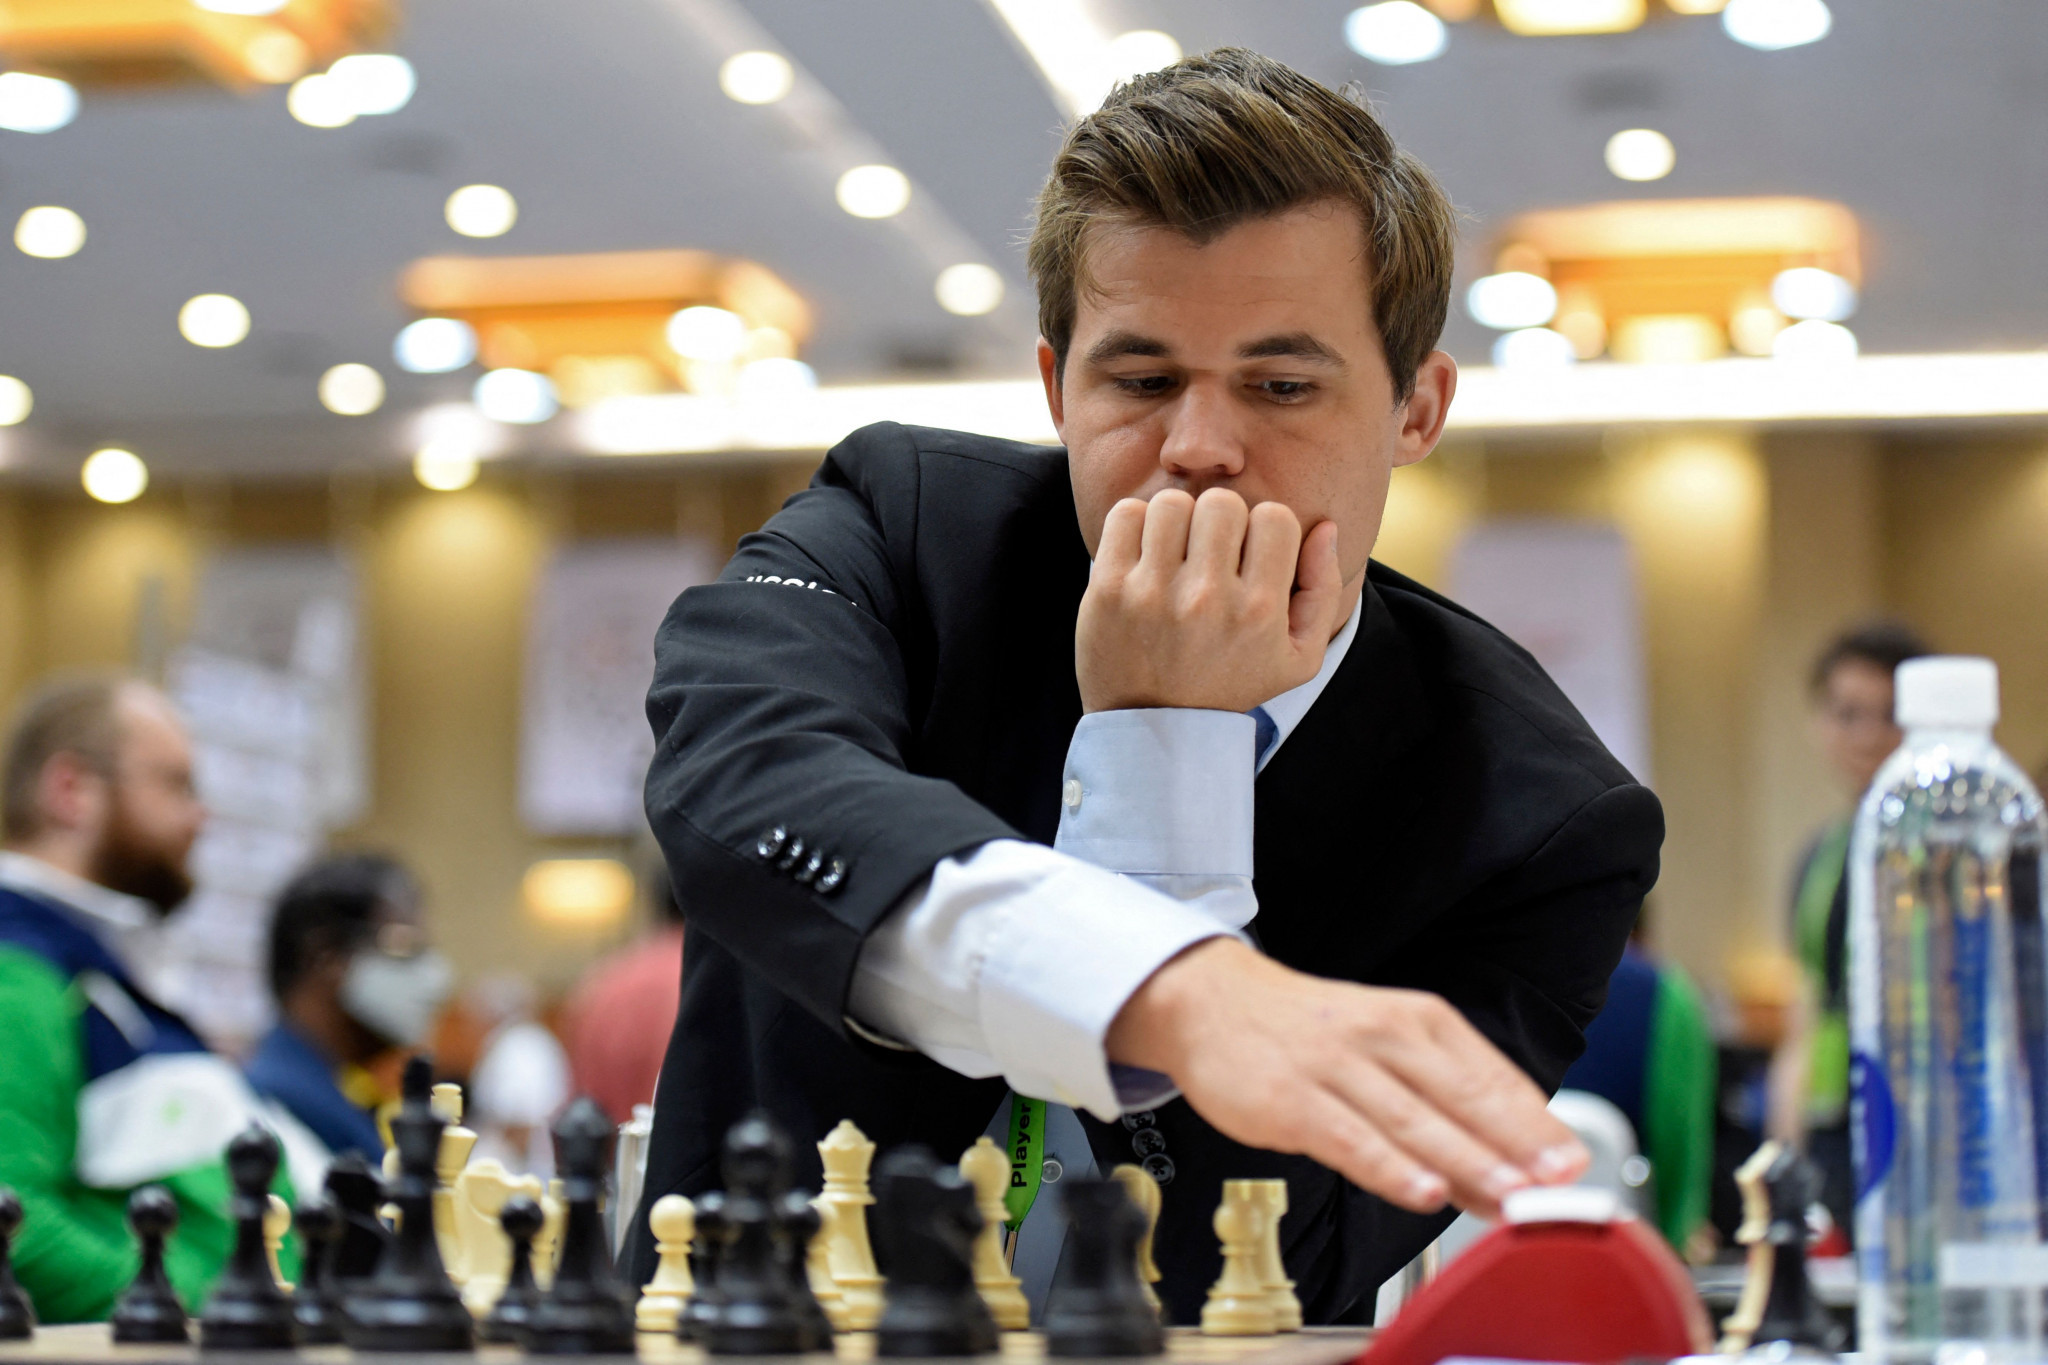 Norway's Magnus Carlsen directly accused American Hans Niemann of foul play earlier this week ©Getty Images